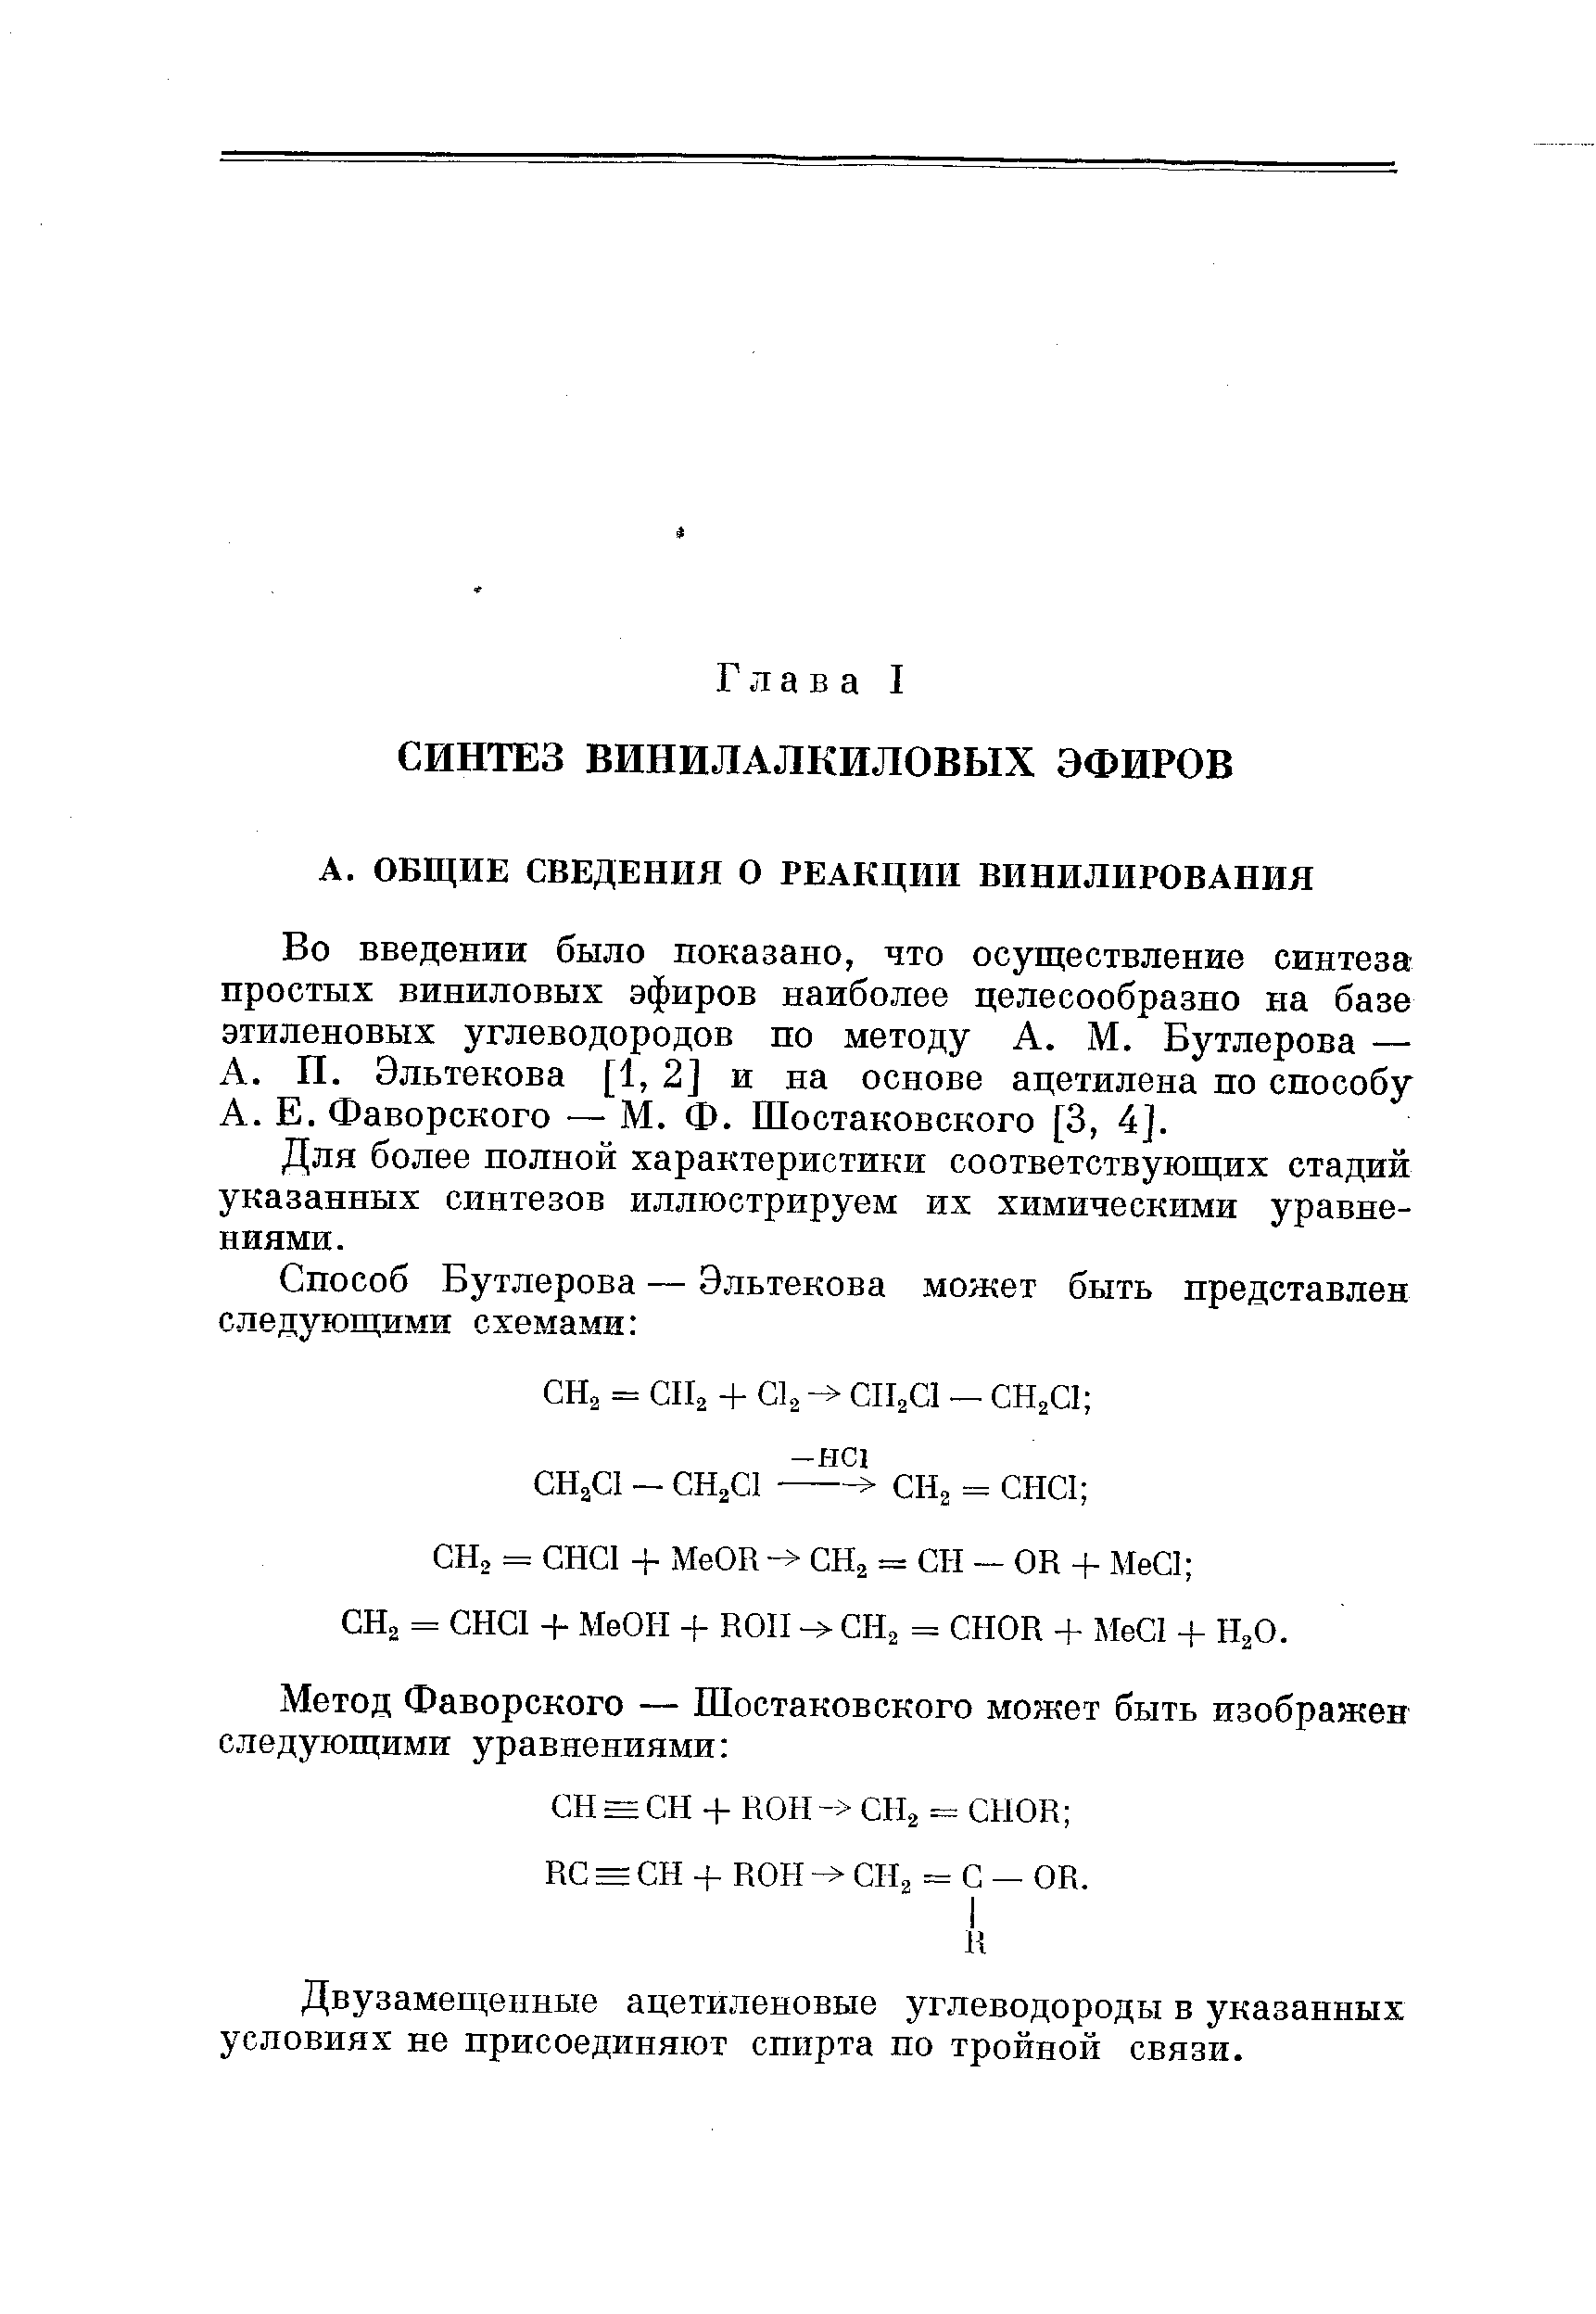 Во введении было показано, что осуществление синтеза простых виниловых эфиров наиболее целесообразно на базе этиленовых углеводородов по методу А. М. Бутлерова — А. П. Эльтекова [1, 2] и на основе ацетилена по способу А. Е. Фаворского — М. Ф. Шостаковского [3, 4].